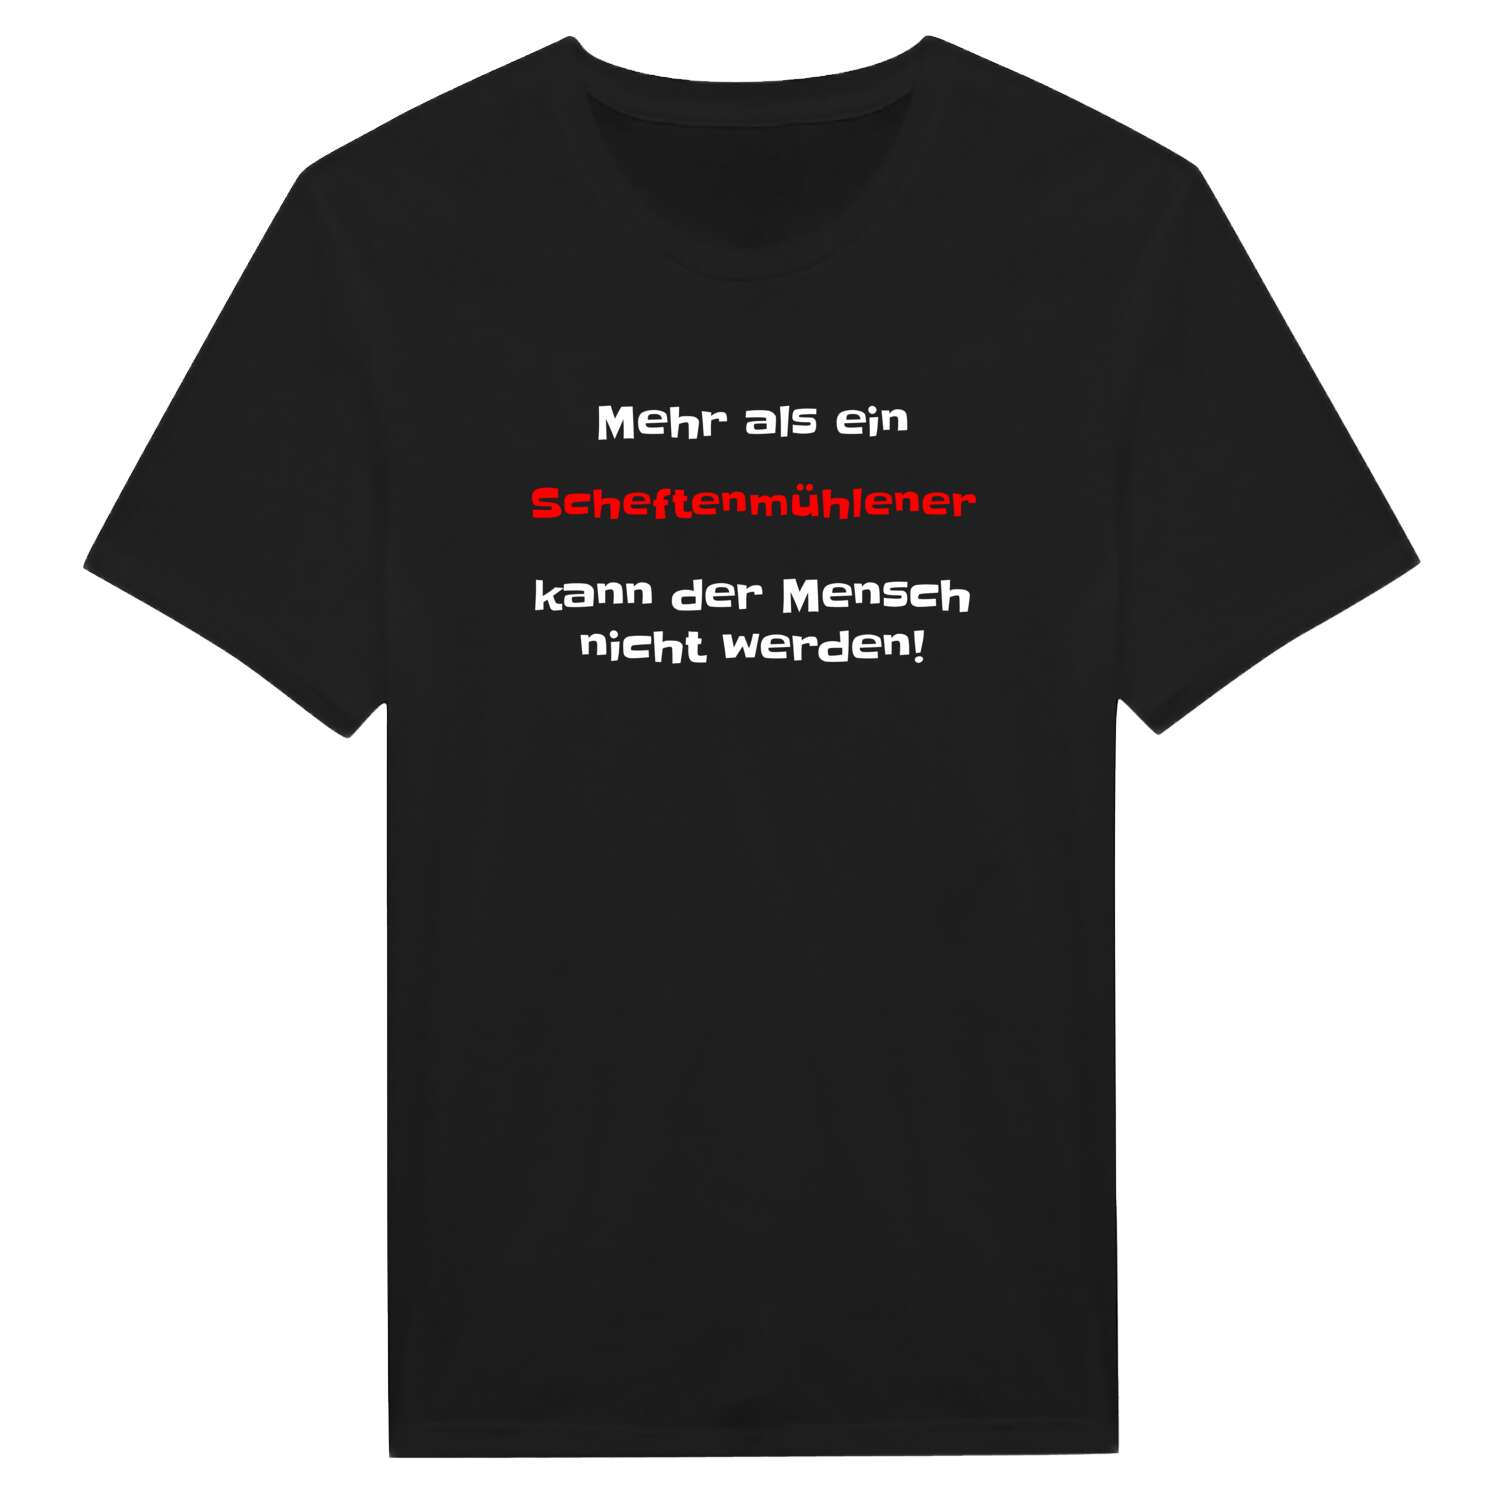 Scheftenmühle T-Shirt »Mehr als ein«